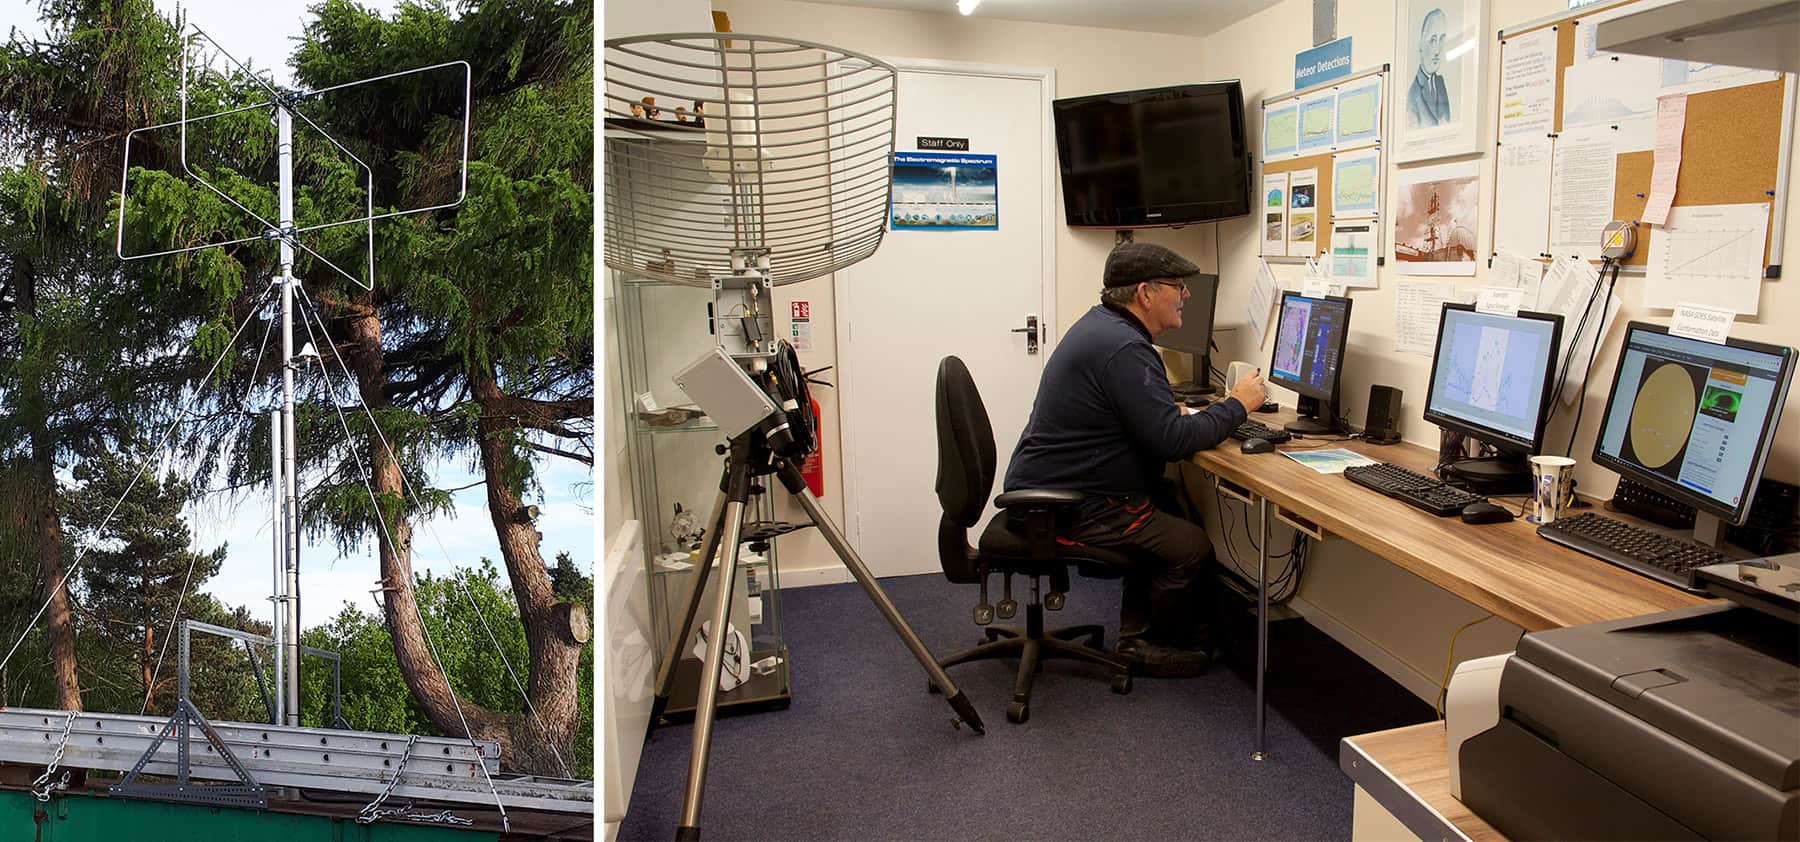 To bilder: et radiofyr og en mann satt ved et skrivebord og så på flere dataskjermer